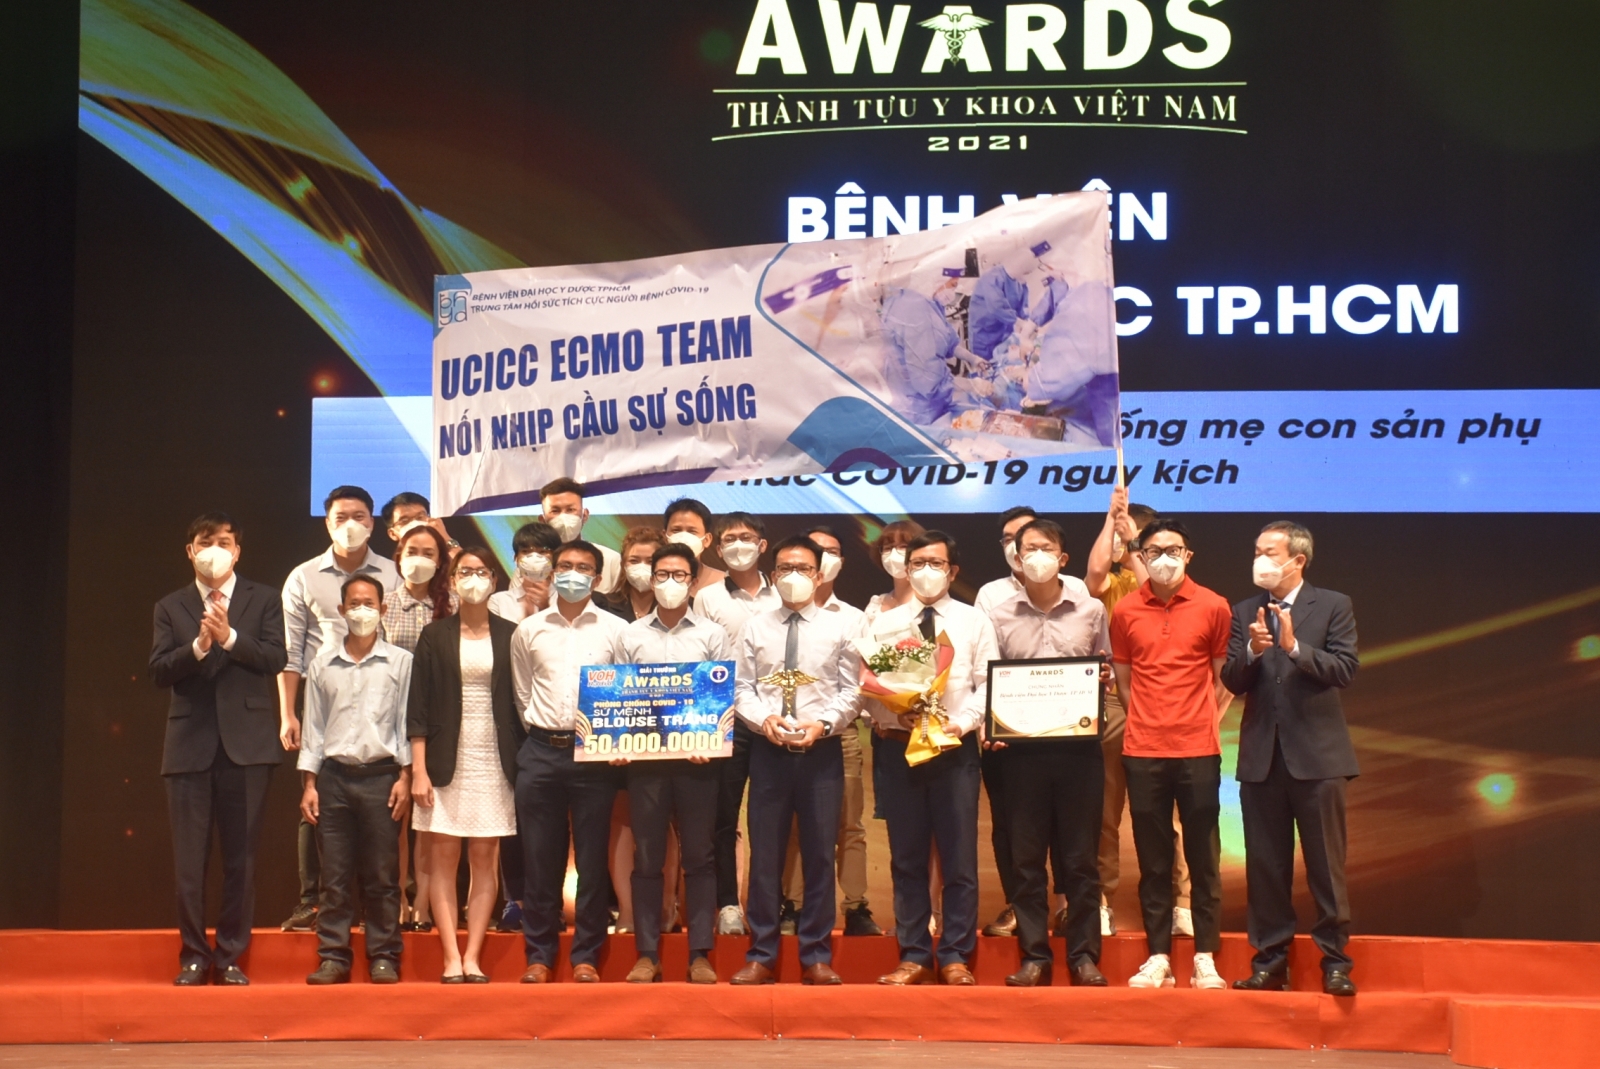 Giải thưởng Thành tựu Y khoa Việt Nam năm 2021 vinh danh hai trường đại học Thành phố Hồ Chí Minh - Ảnh minh hoạ 3